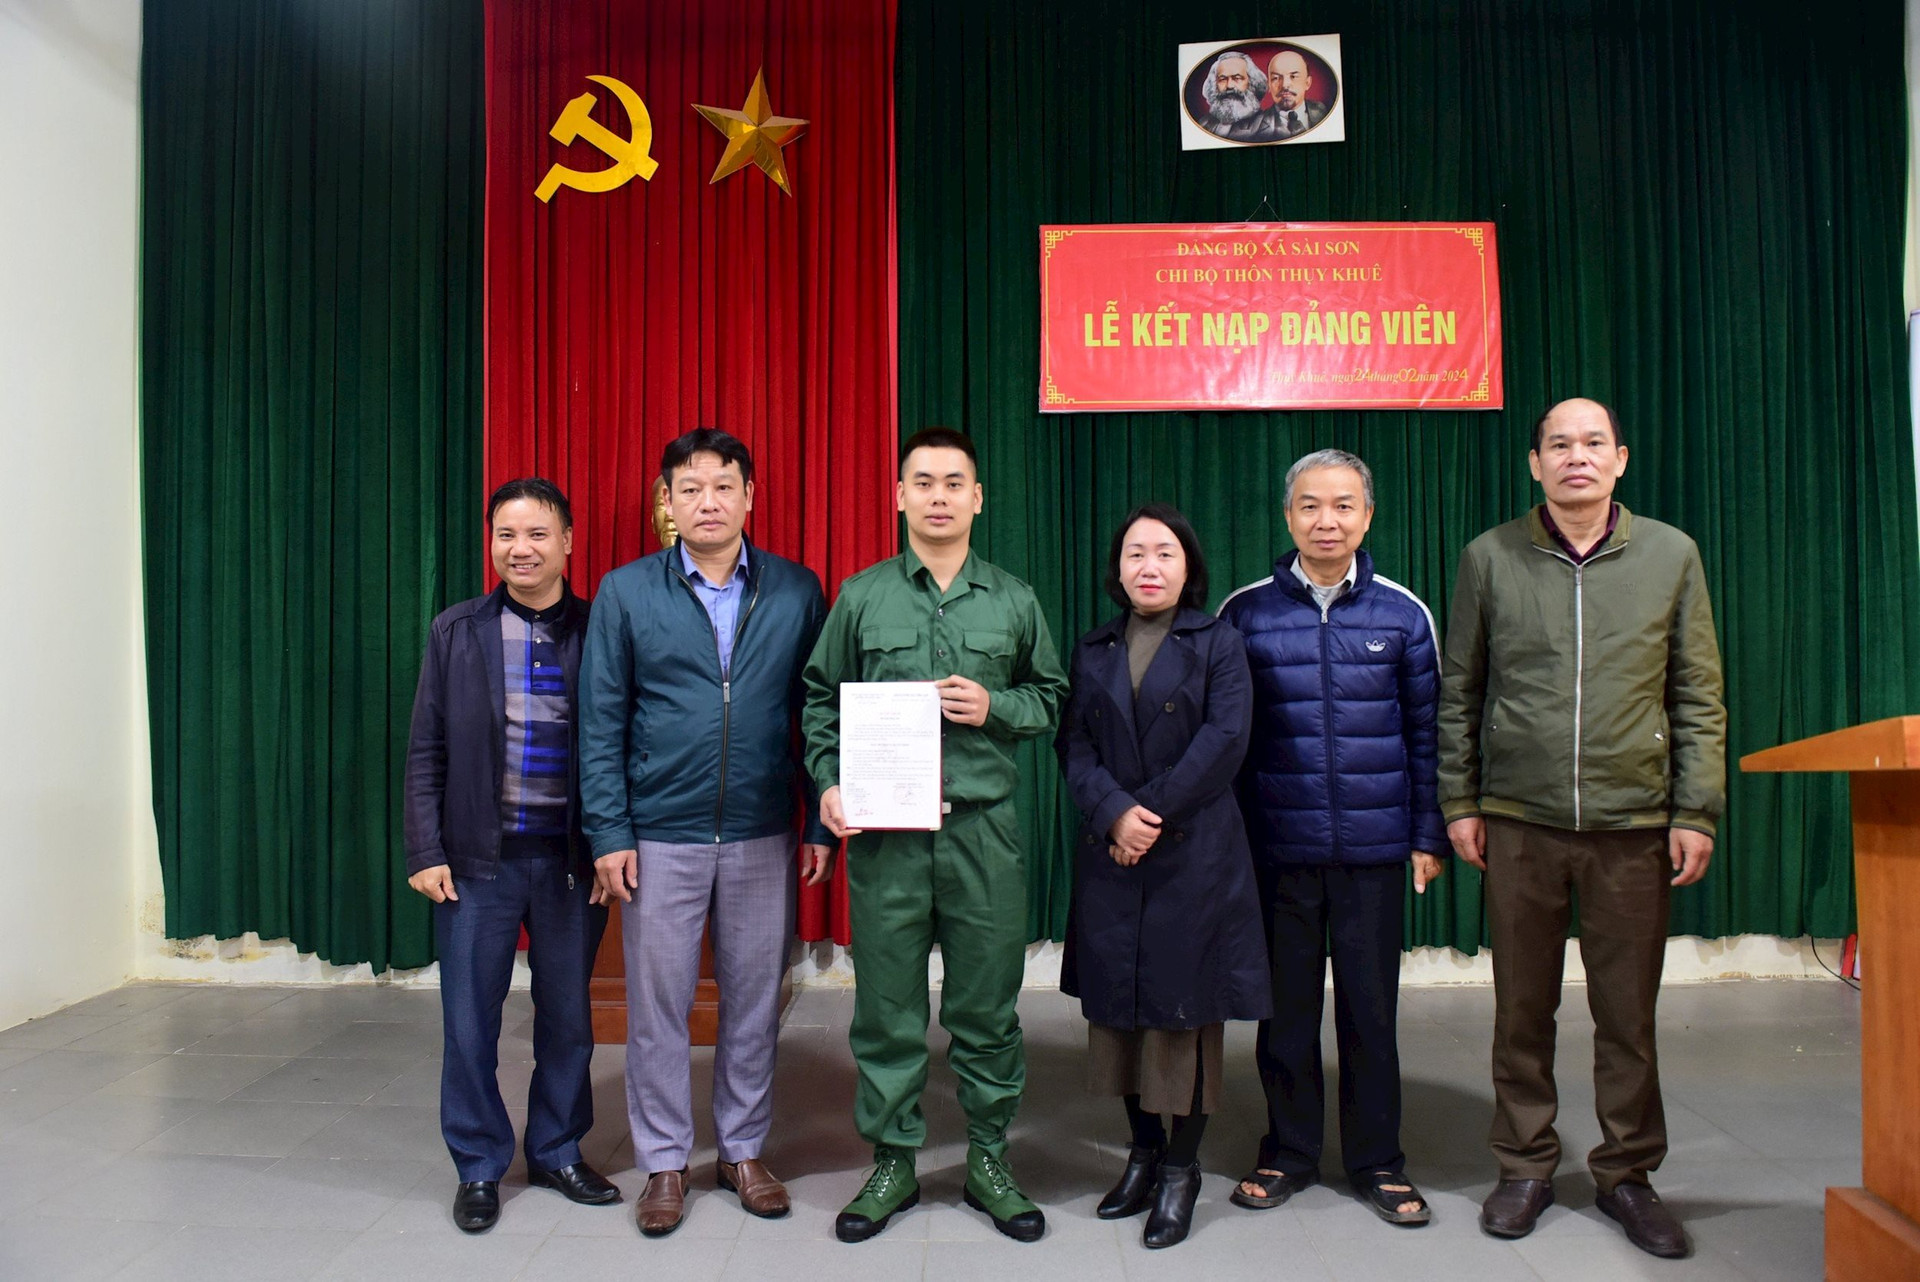 Chi bộ thôn Thụy Khuê, Đảng bộ xã Sài Sơn trao quyết định kết nạp cho đảng viên Nguyễn Quốc Cường.